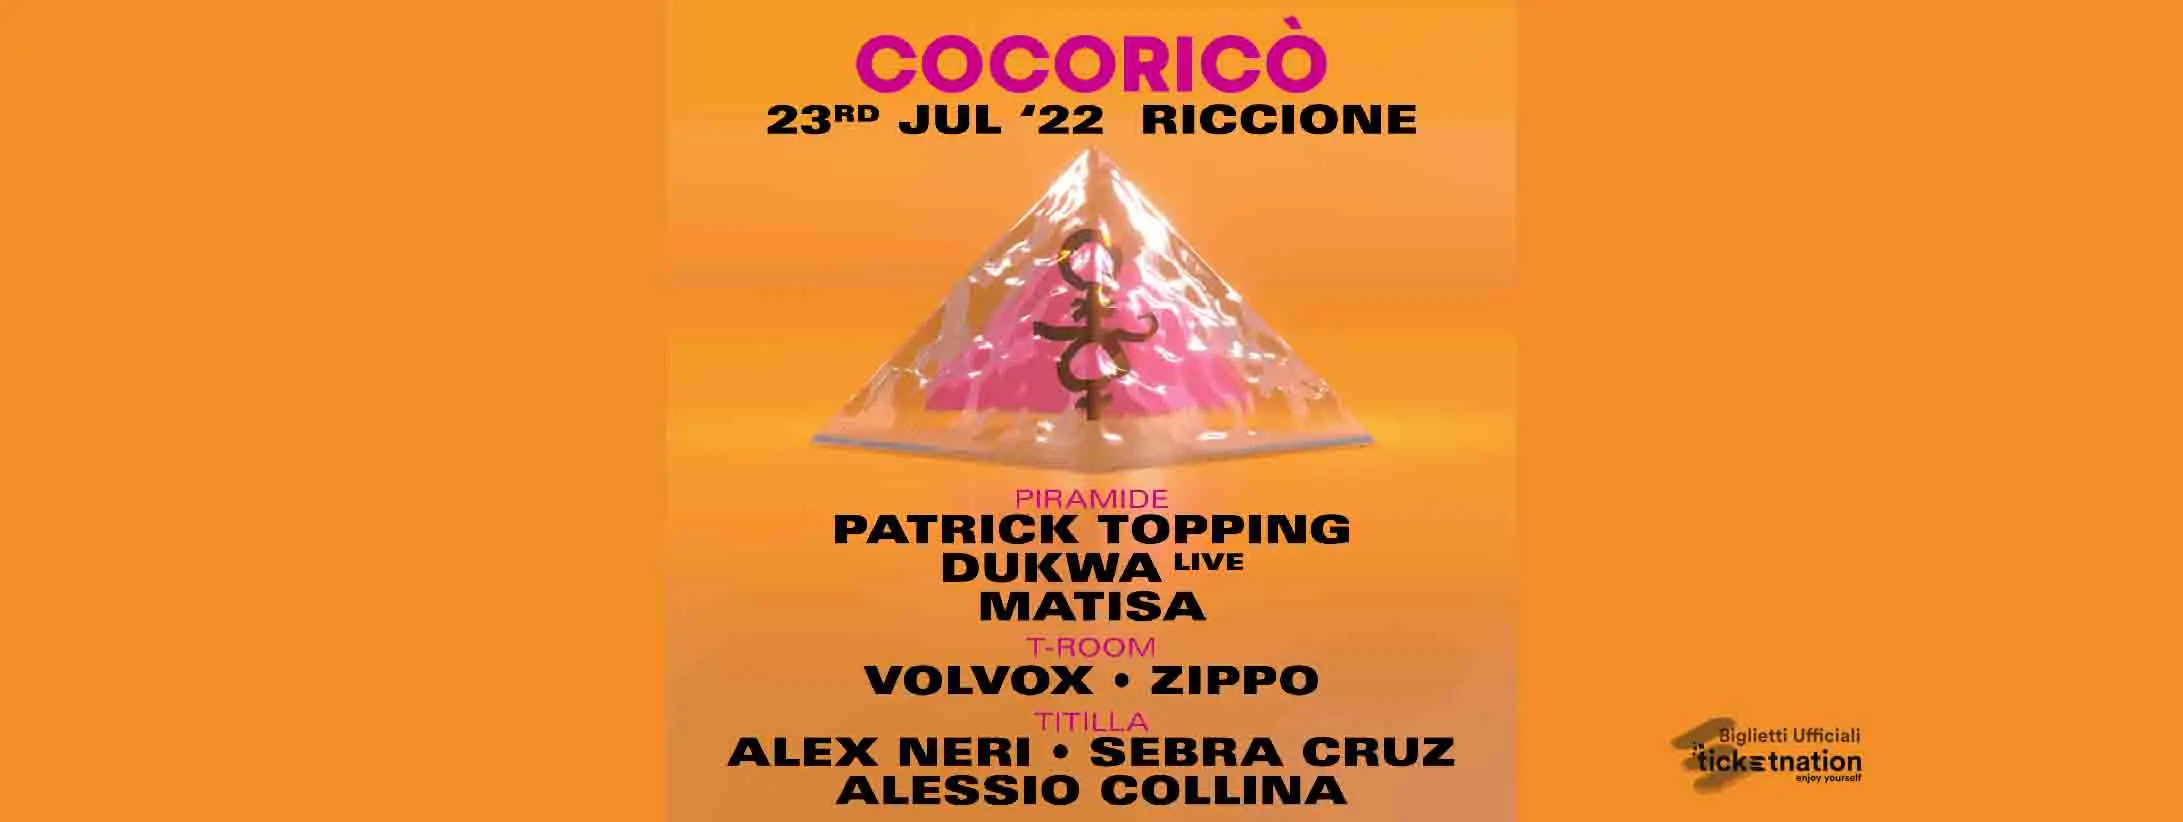 patrick-topping-cocorico-23-luglio-22